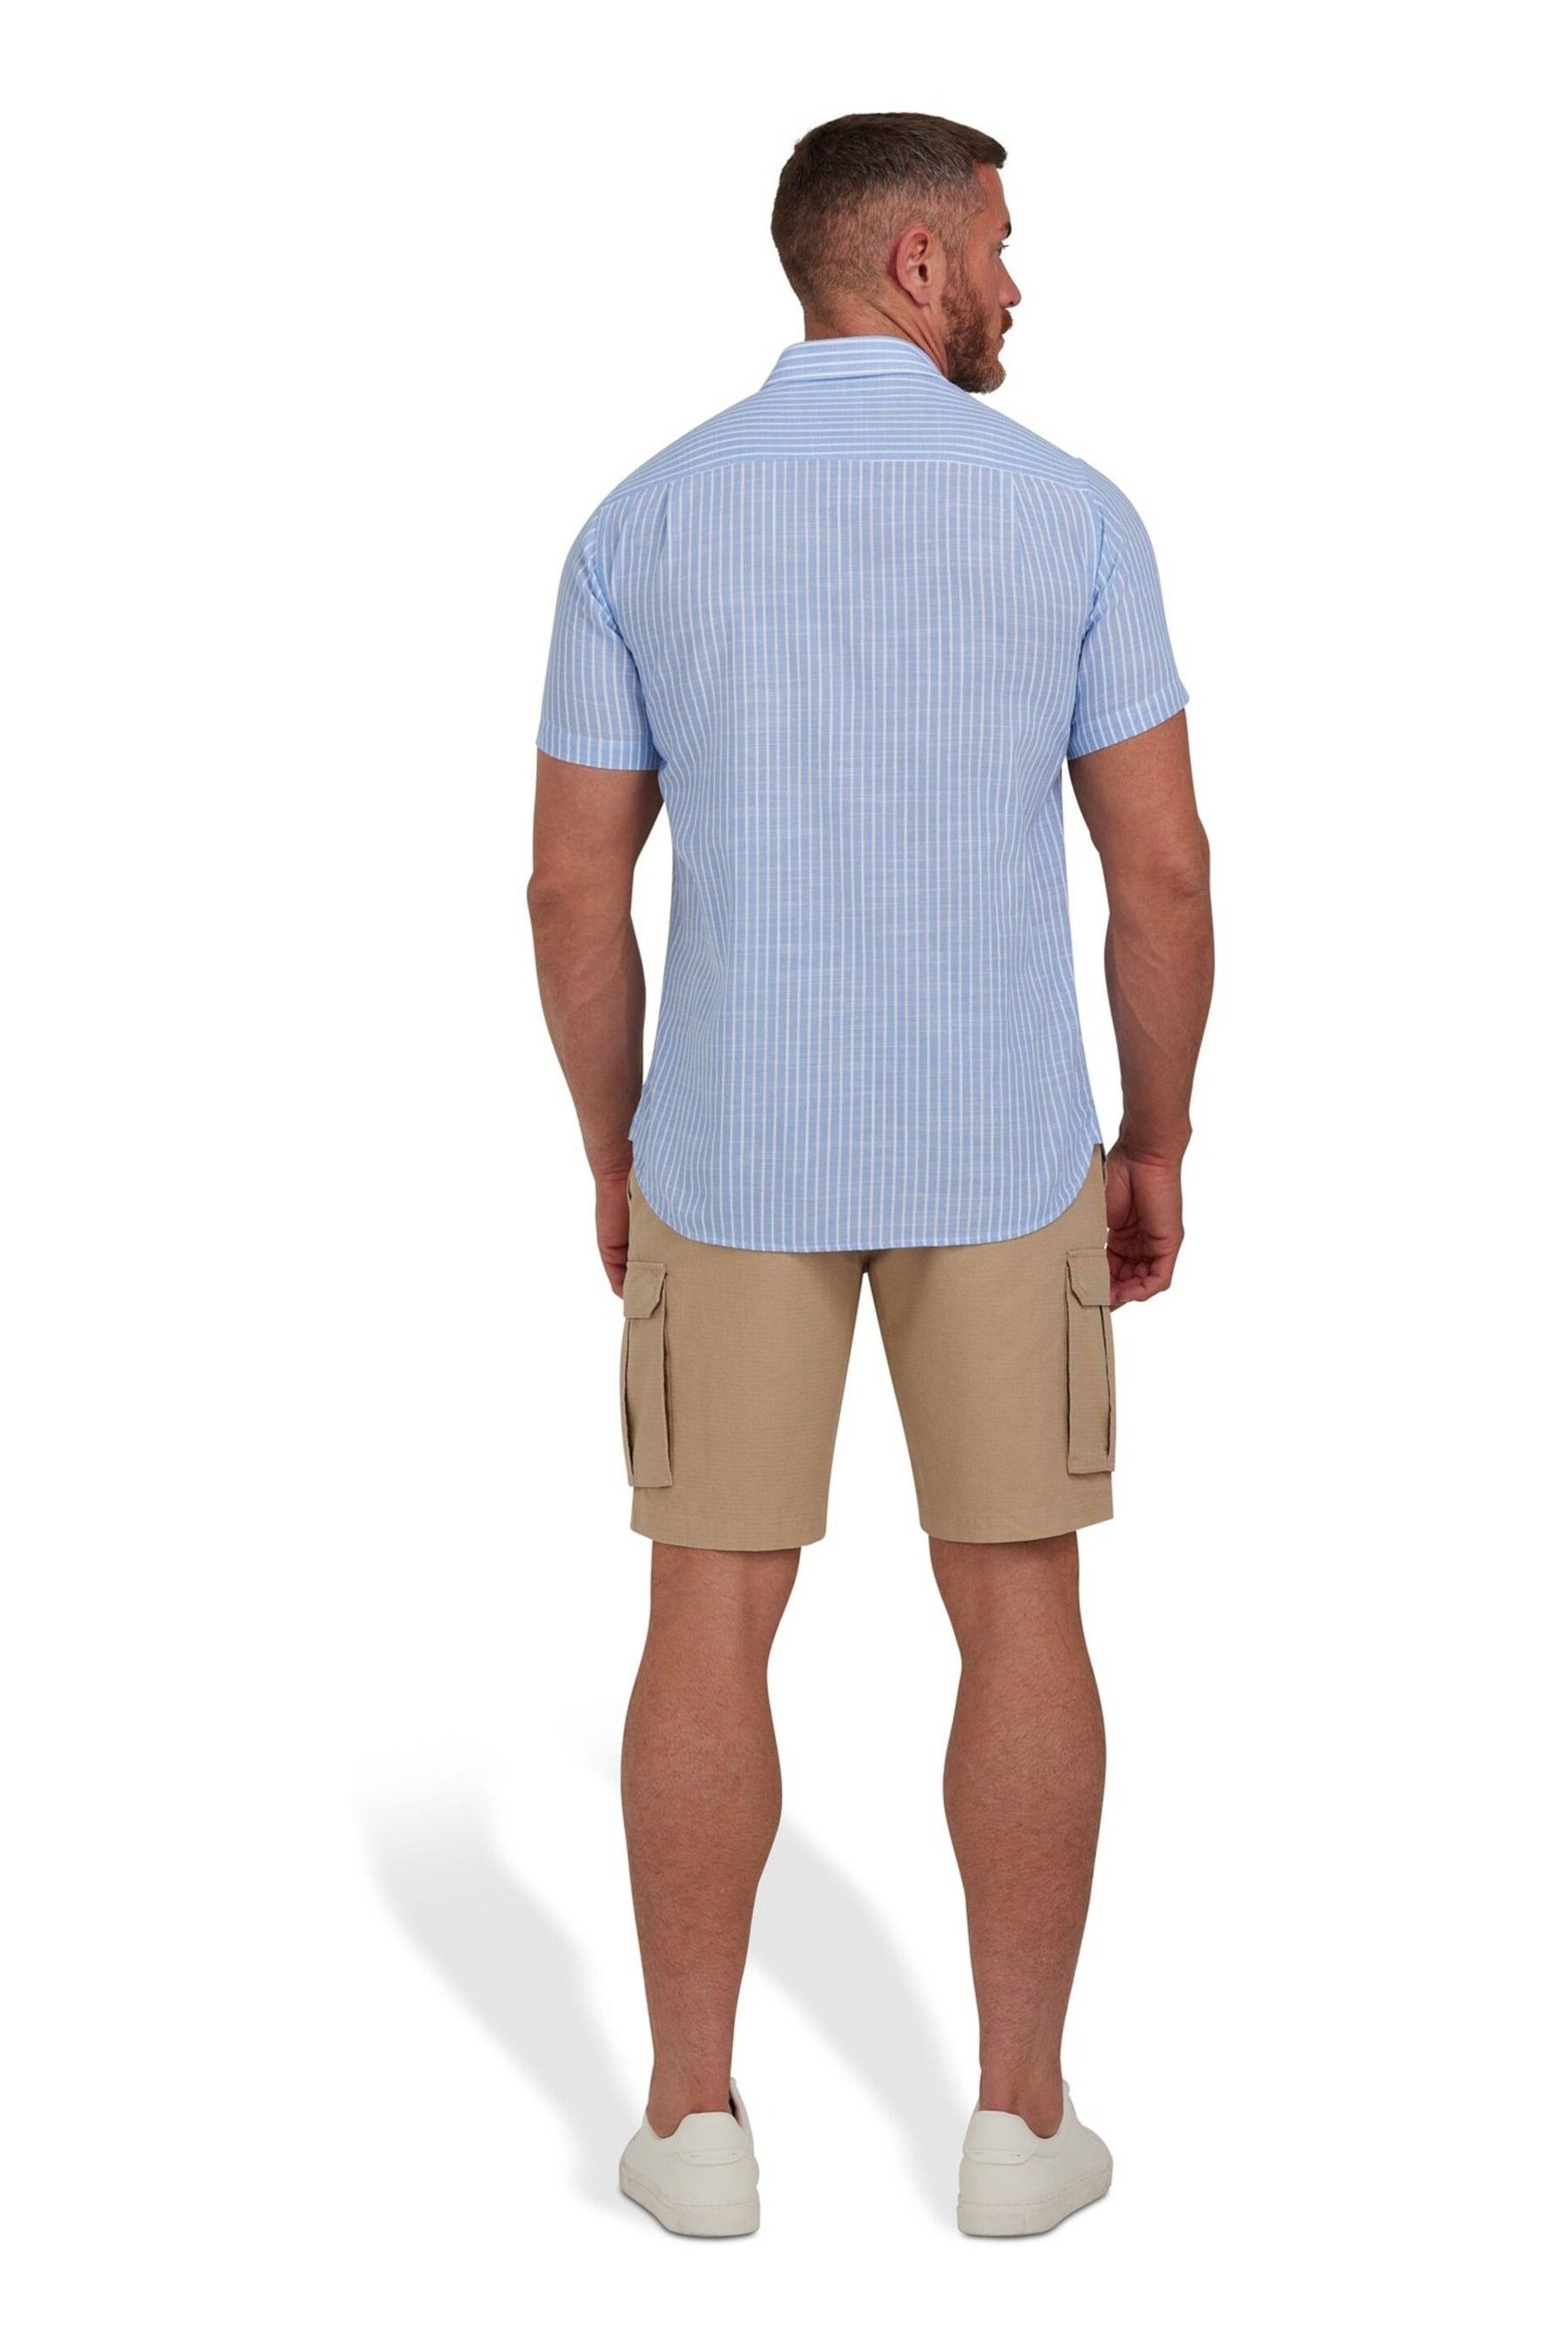 Raging Bull Blue Short Sleeve Fine Stripe Linen Look Shirt - Image 2 of 7